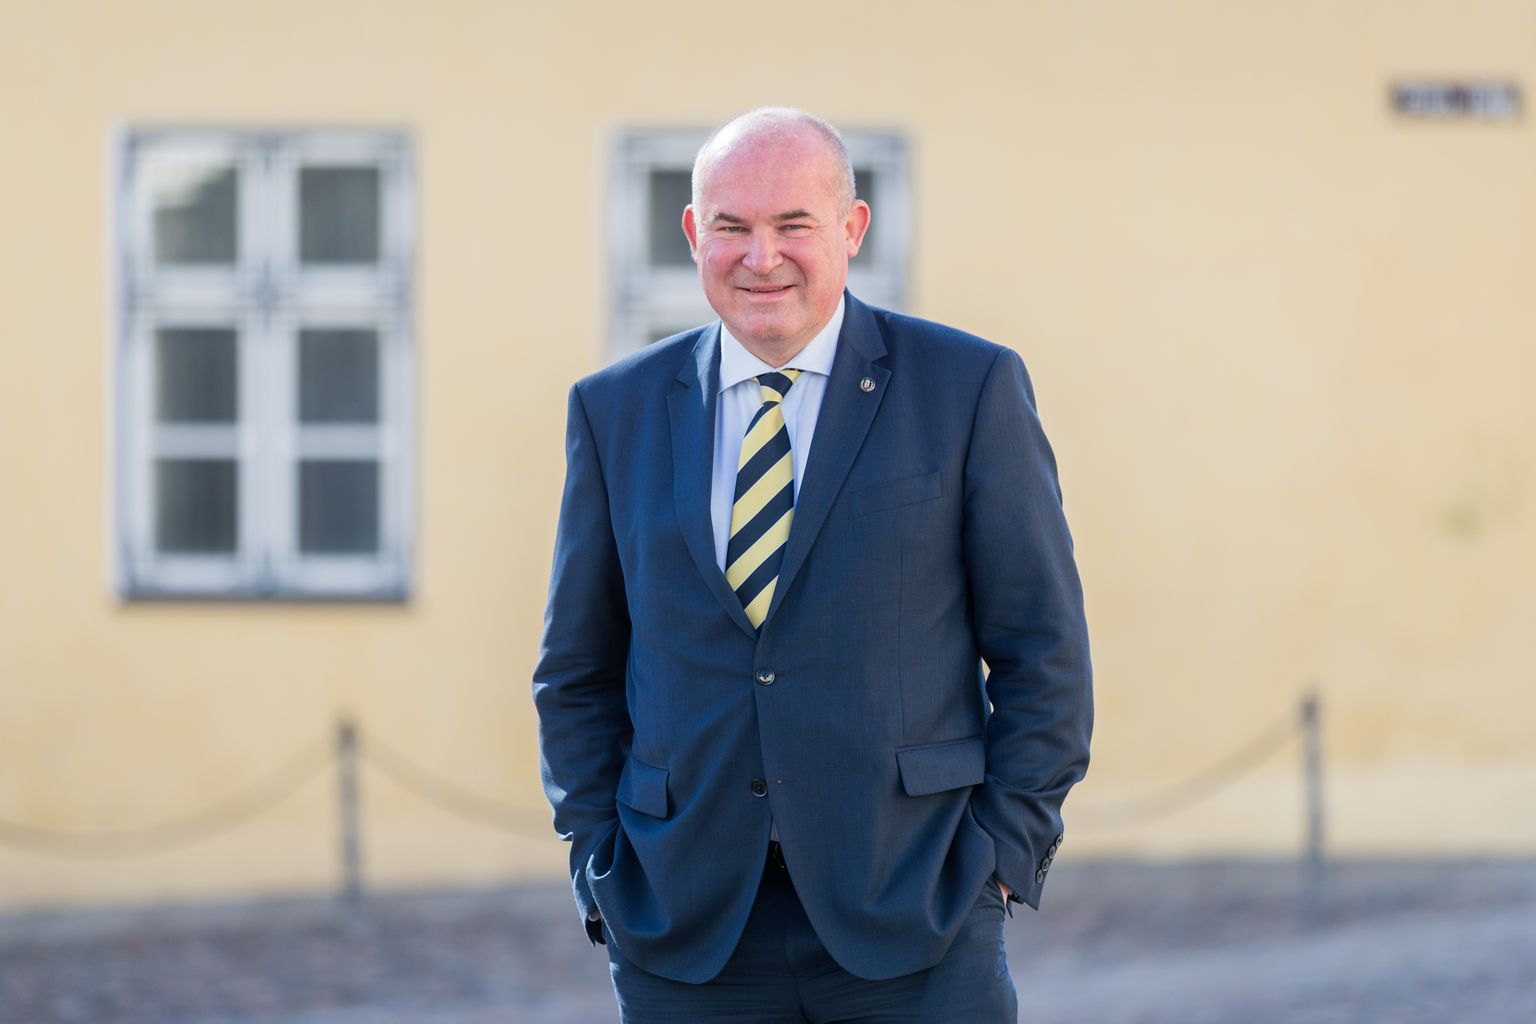 Ungari suursaadik Eestis Vince Szalay-Bobrovniczky resideerub Helsingis ja käib Tallinnas Toompeal asuvas endises saatkonna, praeguses Ungari Instituudi majas asju ajamas paar korda kuus.